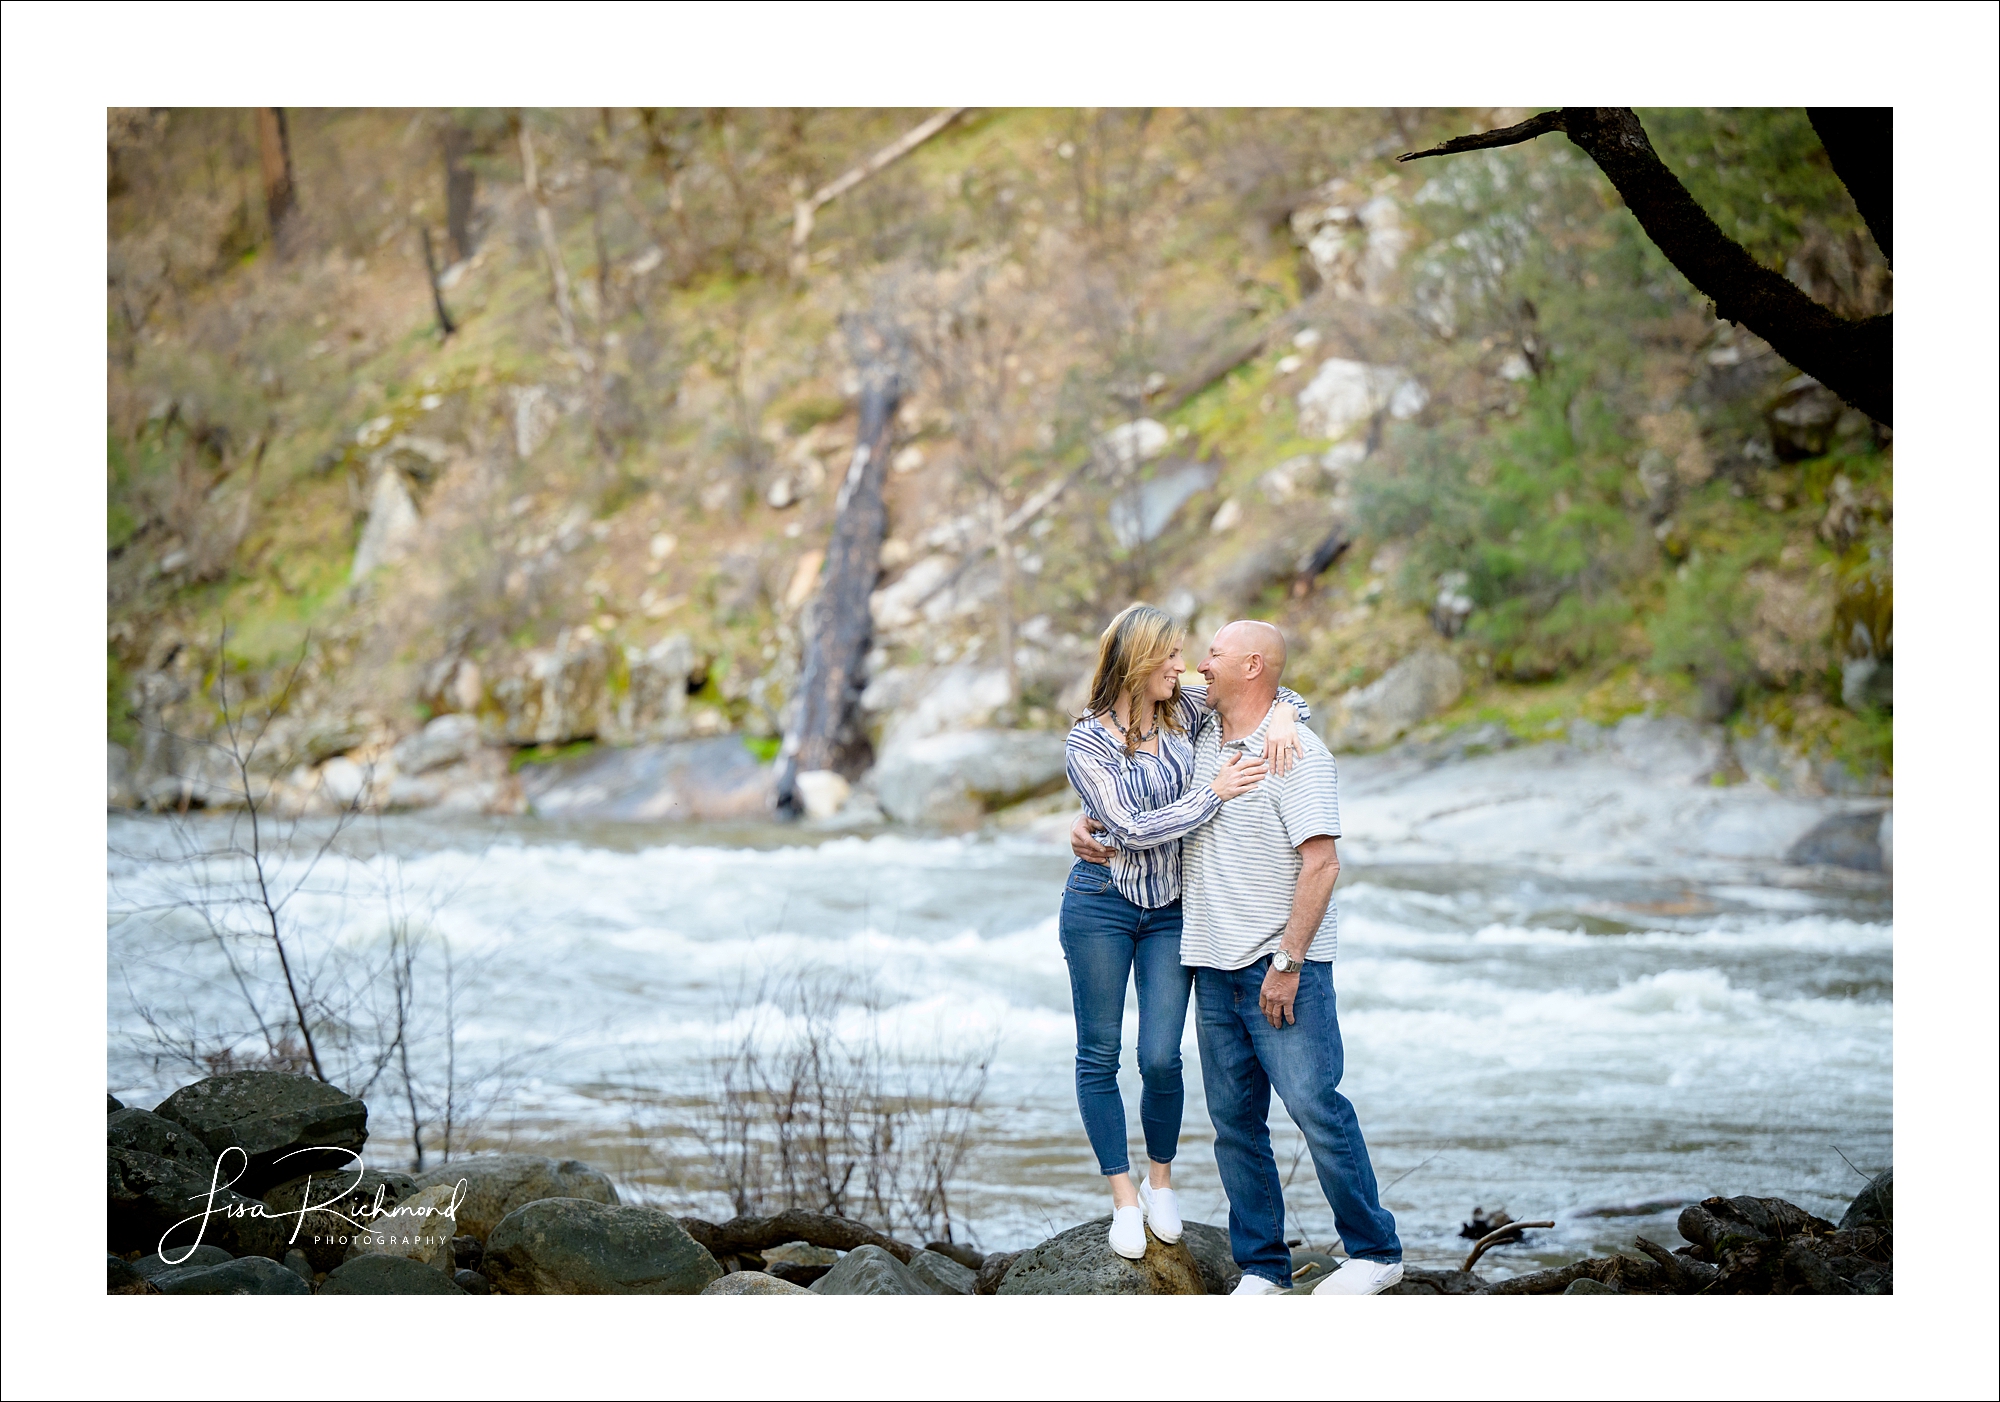 Donna and Robert <br> Engagement session at Alder Creek